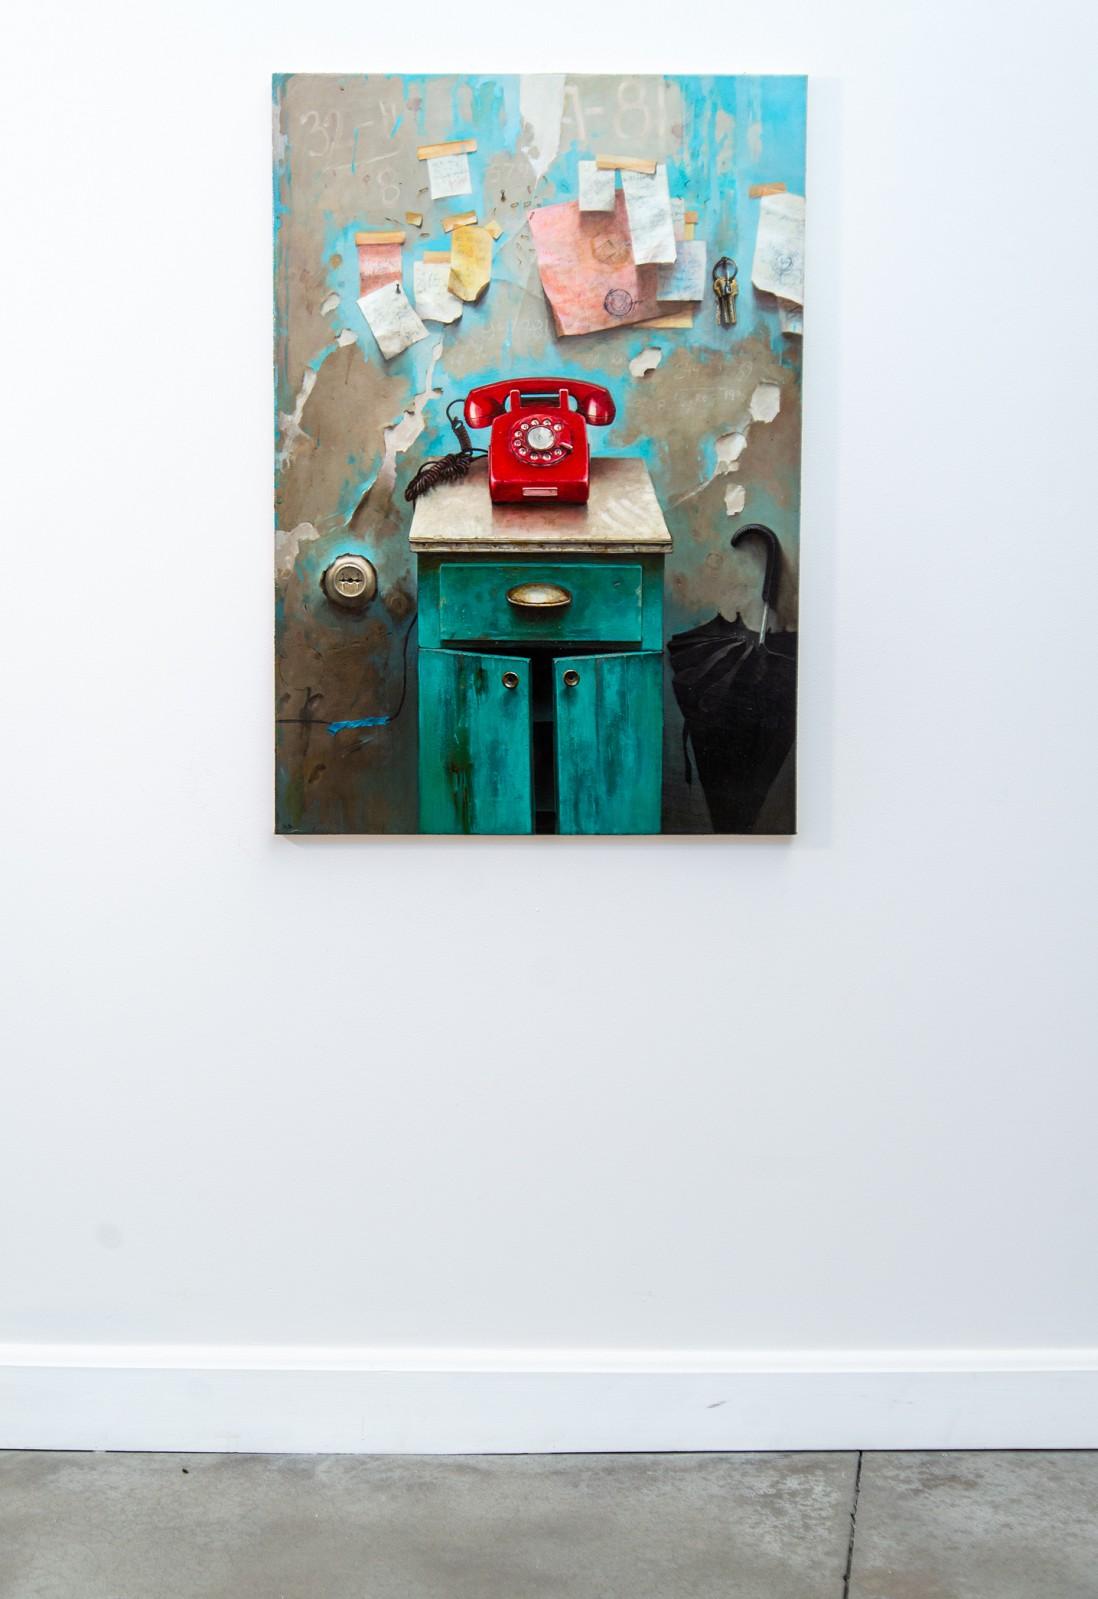 Red Phone – detailliert, realistisch, Interieur, ukrainisch, israelisch, Öl auf Leinwand – Painting von Dmitry Yuzefovich